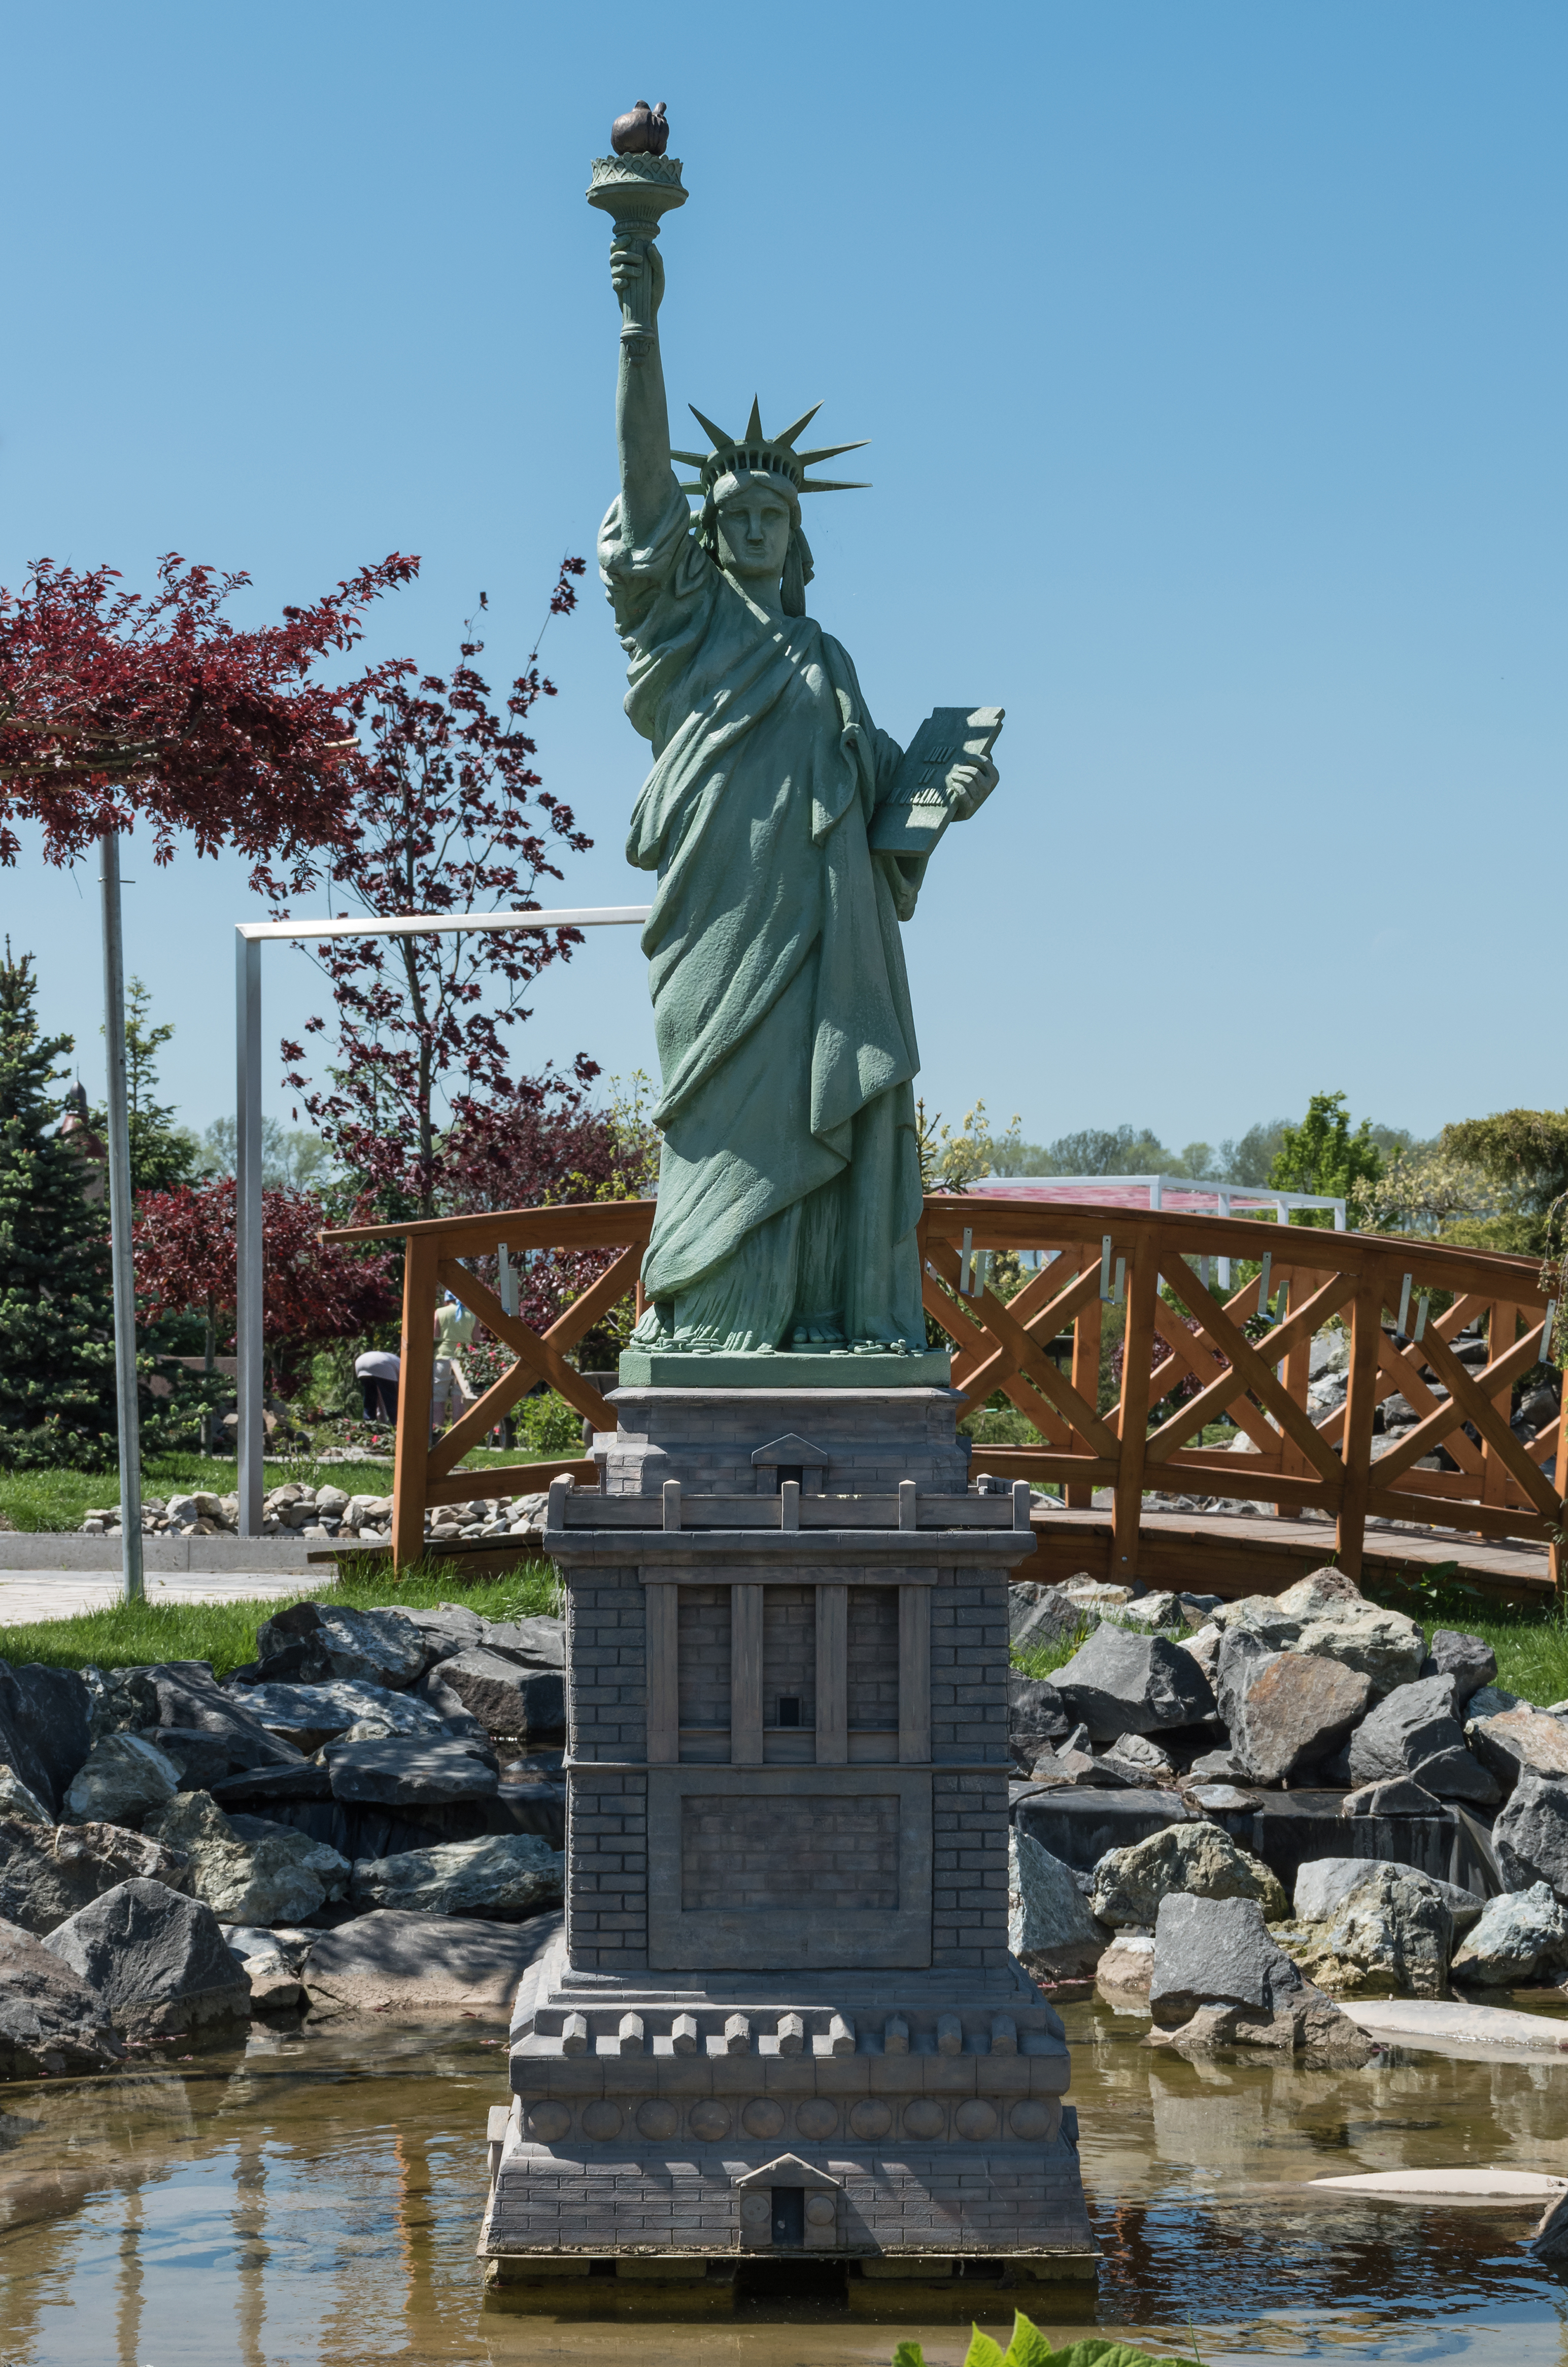 2017 Minieuroland w Kłodzku, Statua Wolności w Nowym Jorku